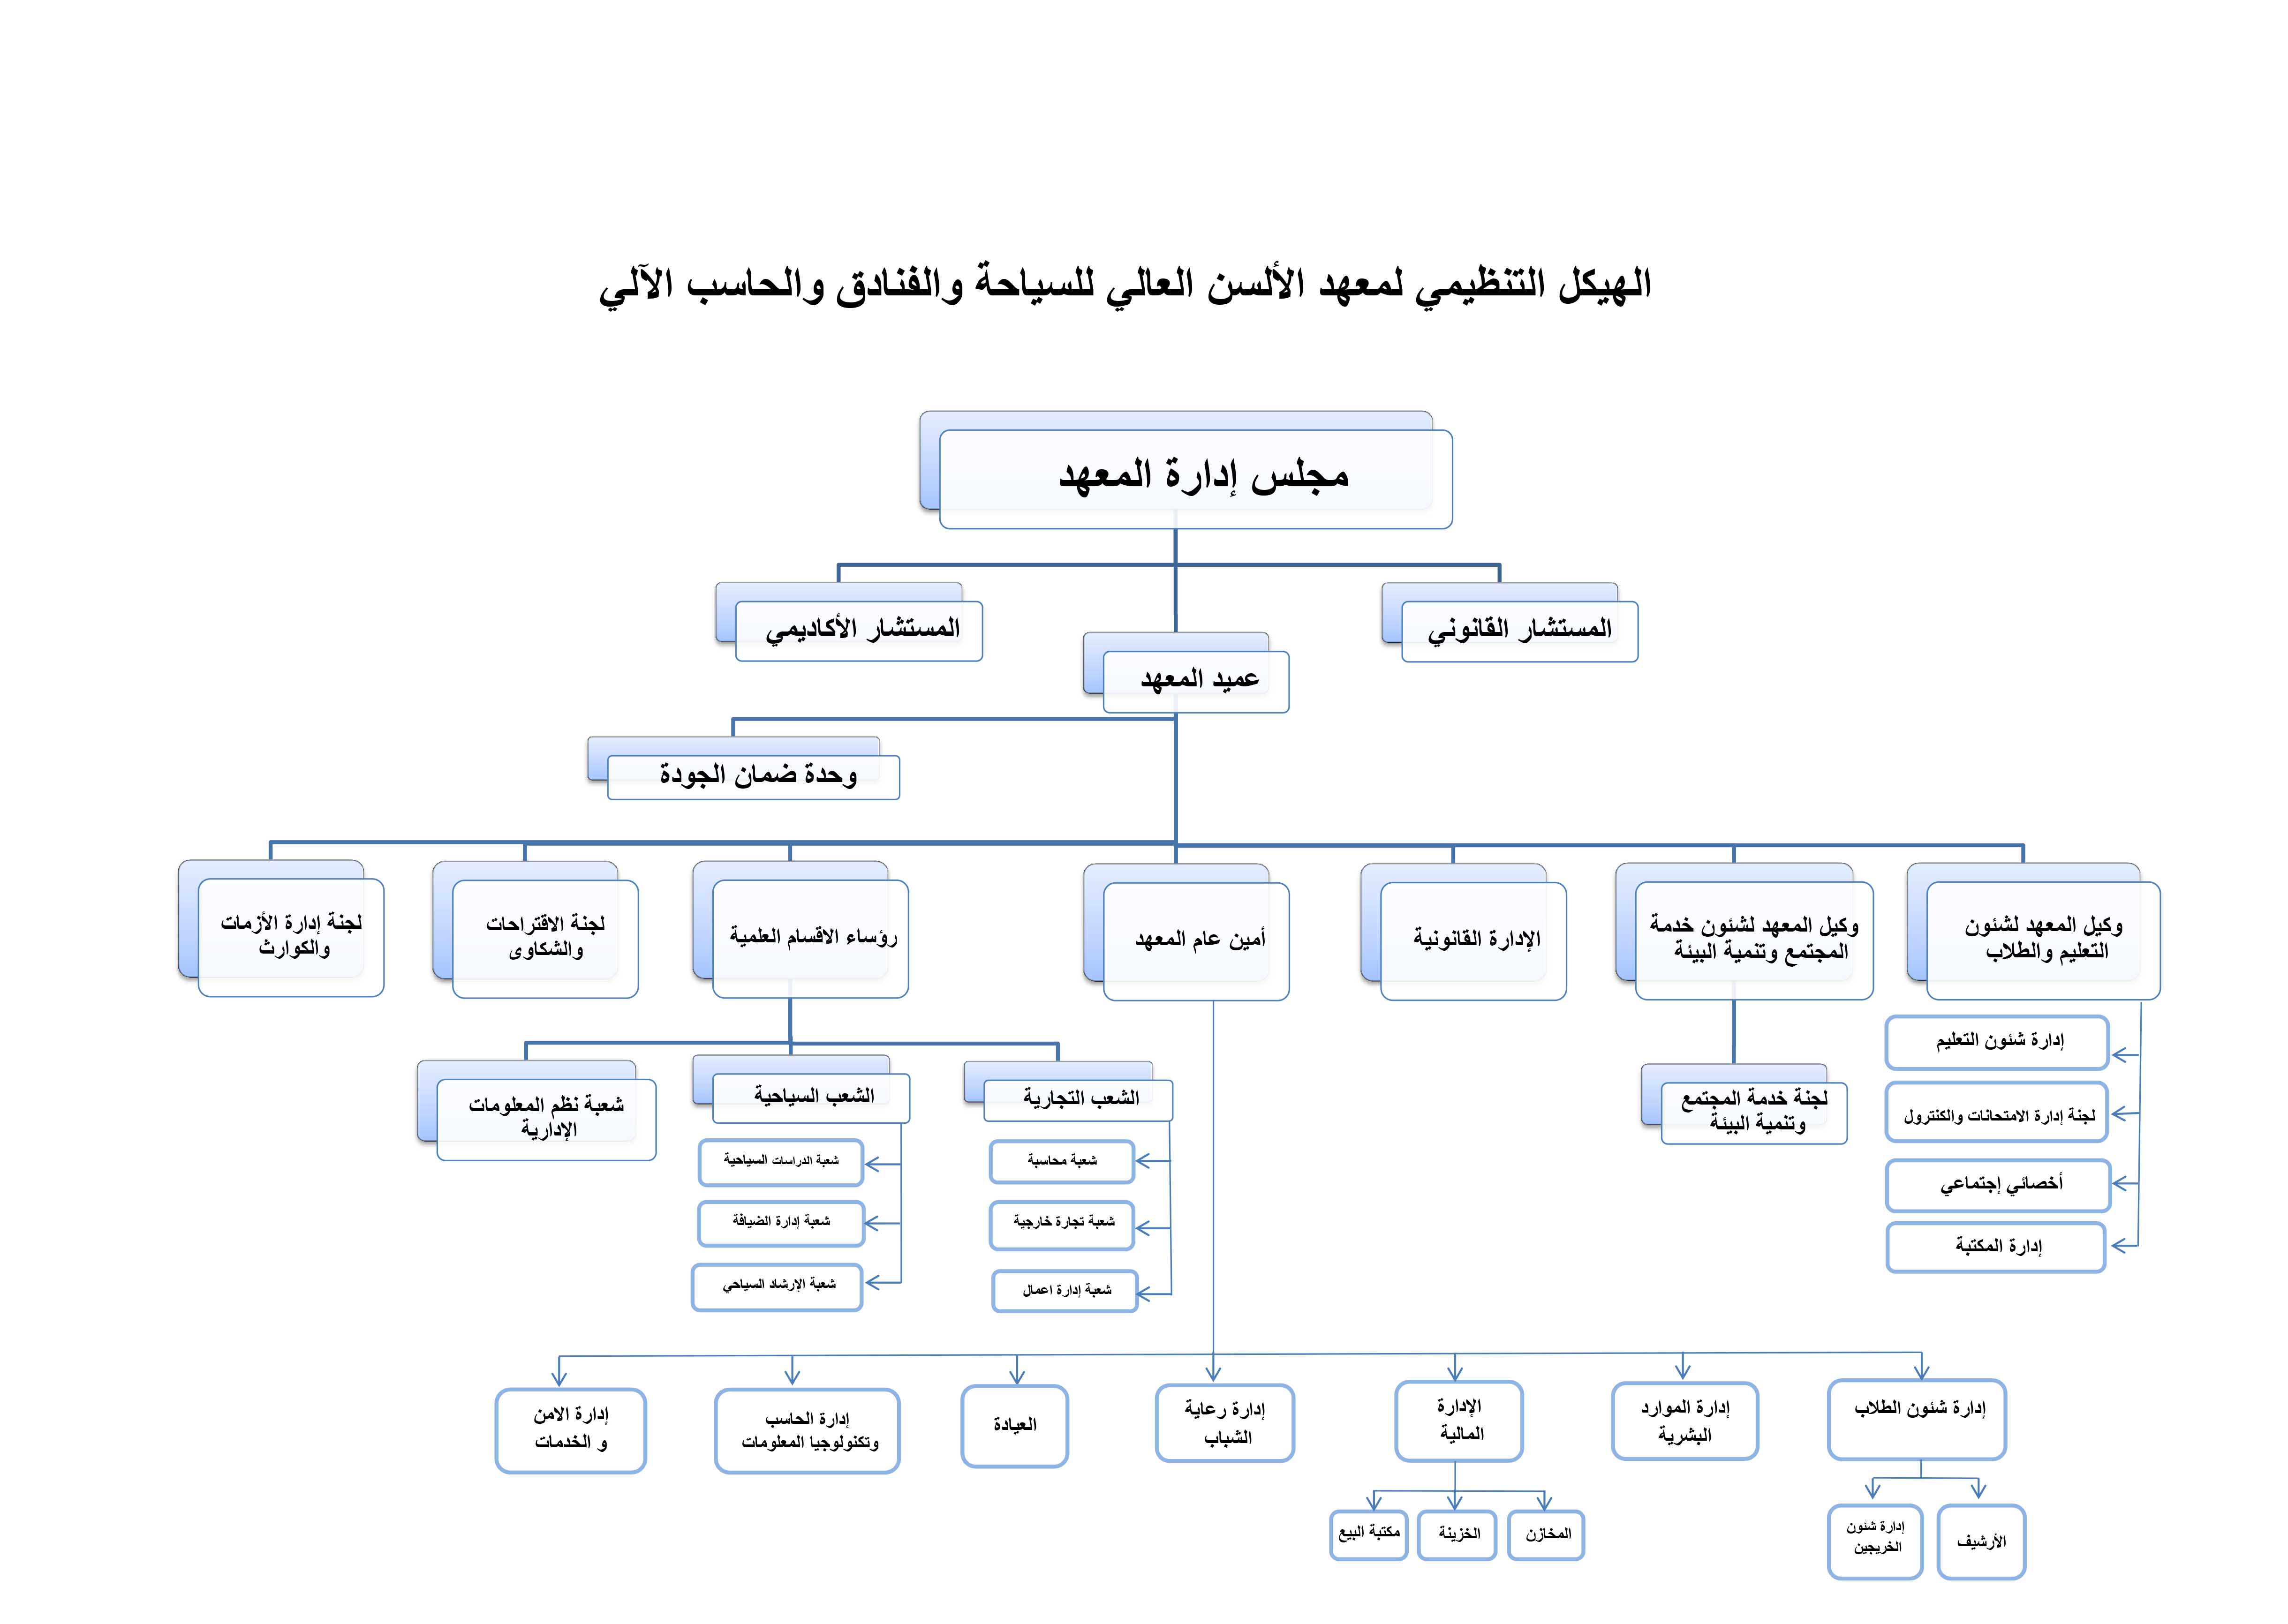 الهيكل التنظيمي للمعهد